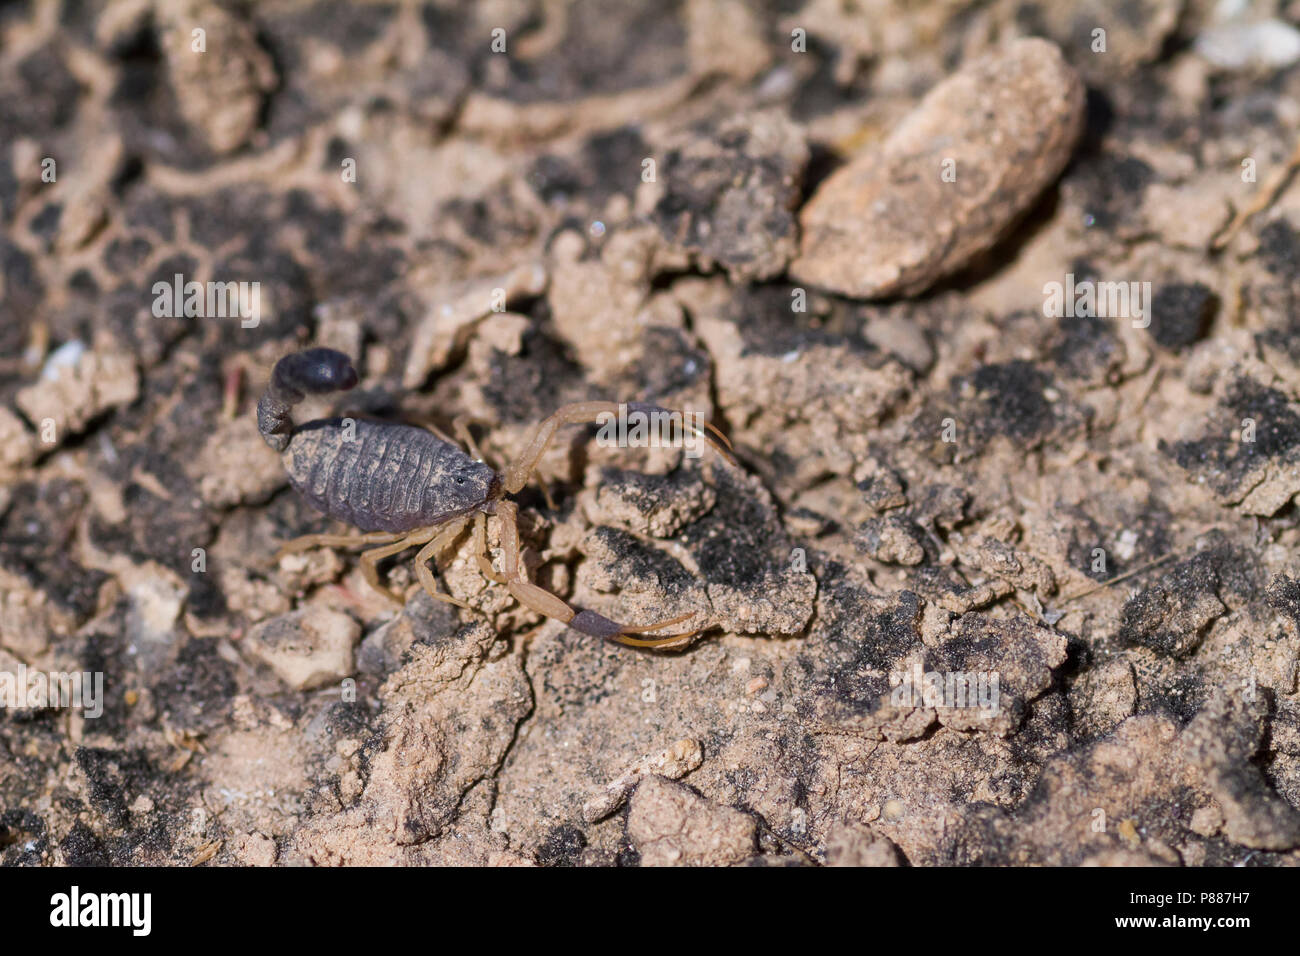 Scorpion species, Oman Stock Photo